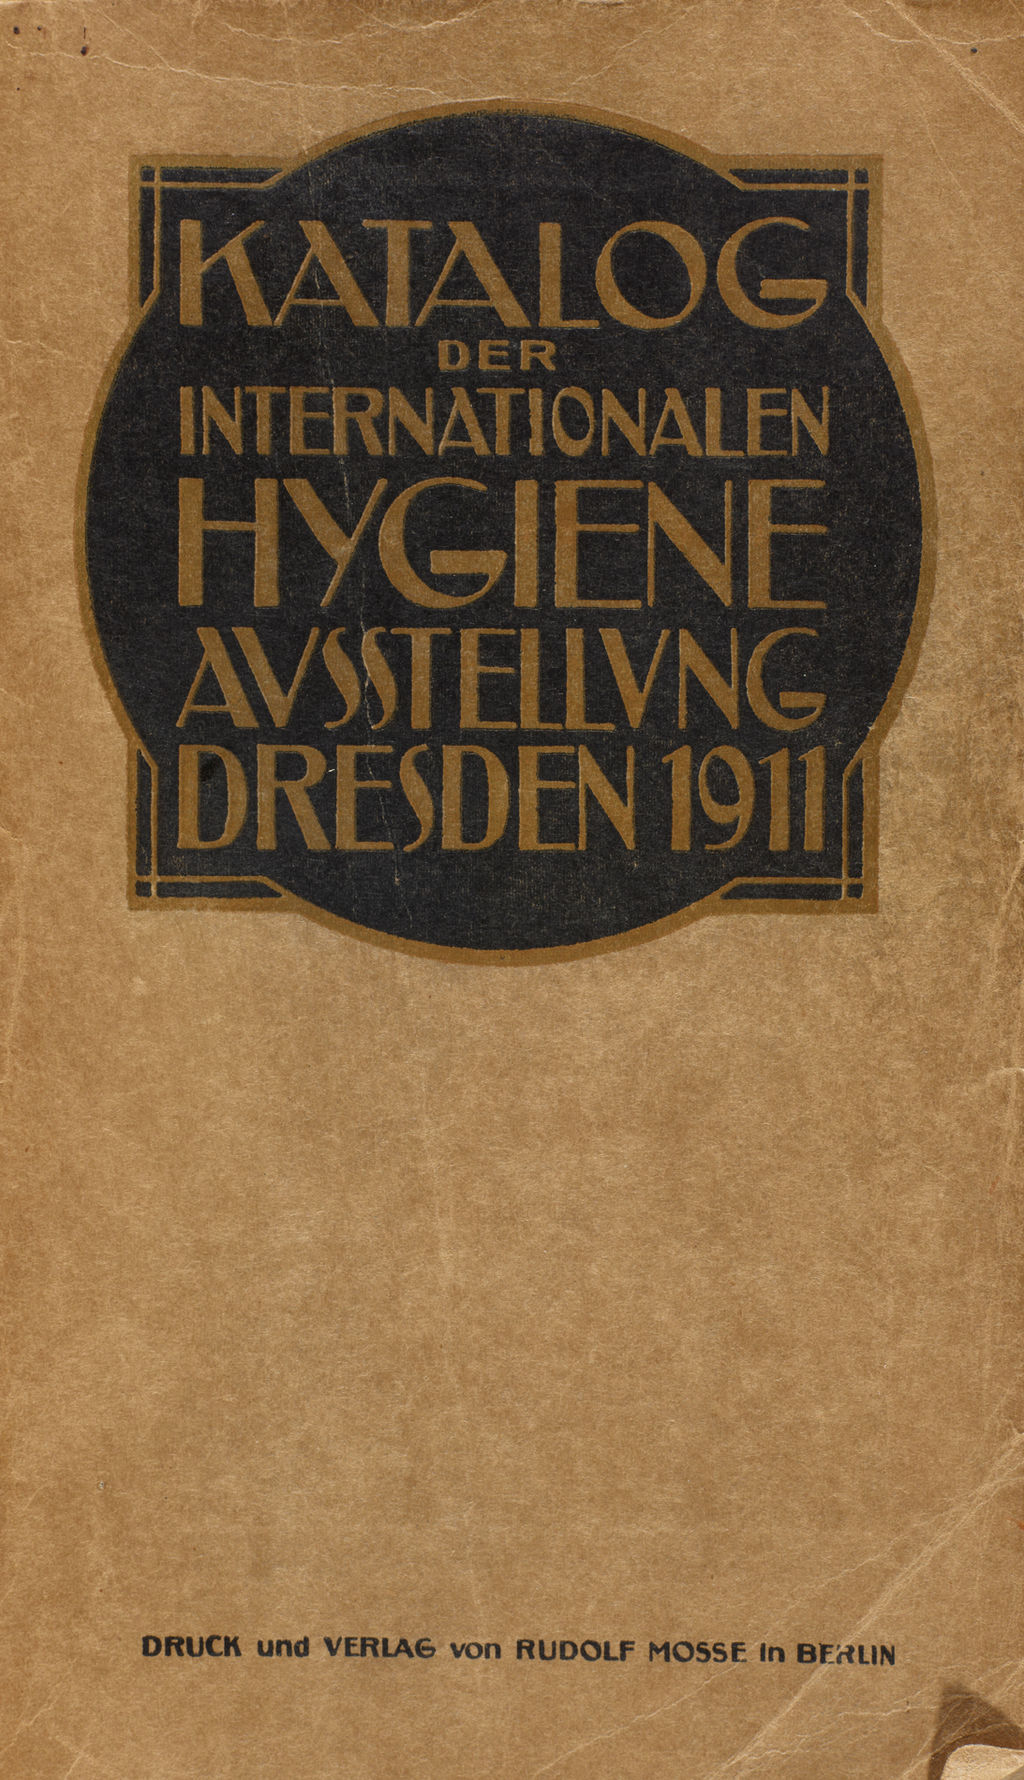 Katalog der Internationalen Hygiene-Ausstellung in Dresden 1911